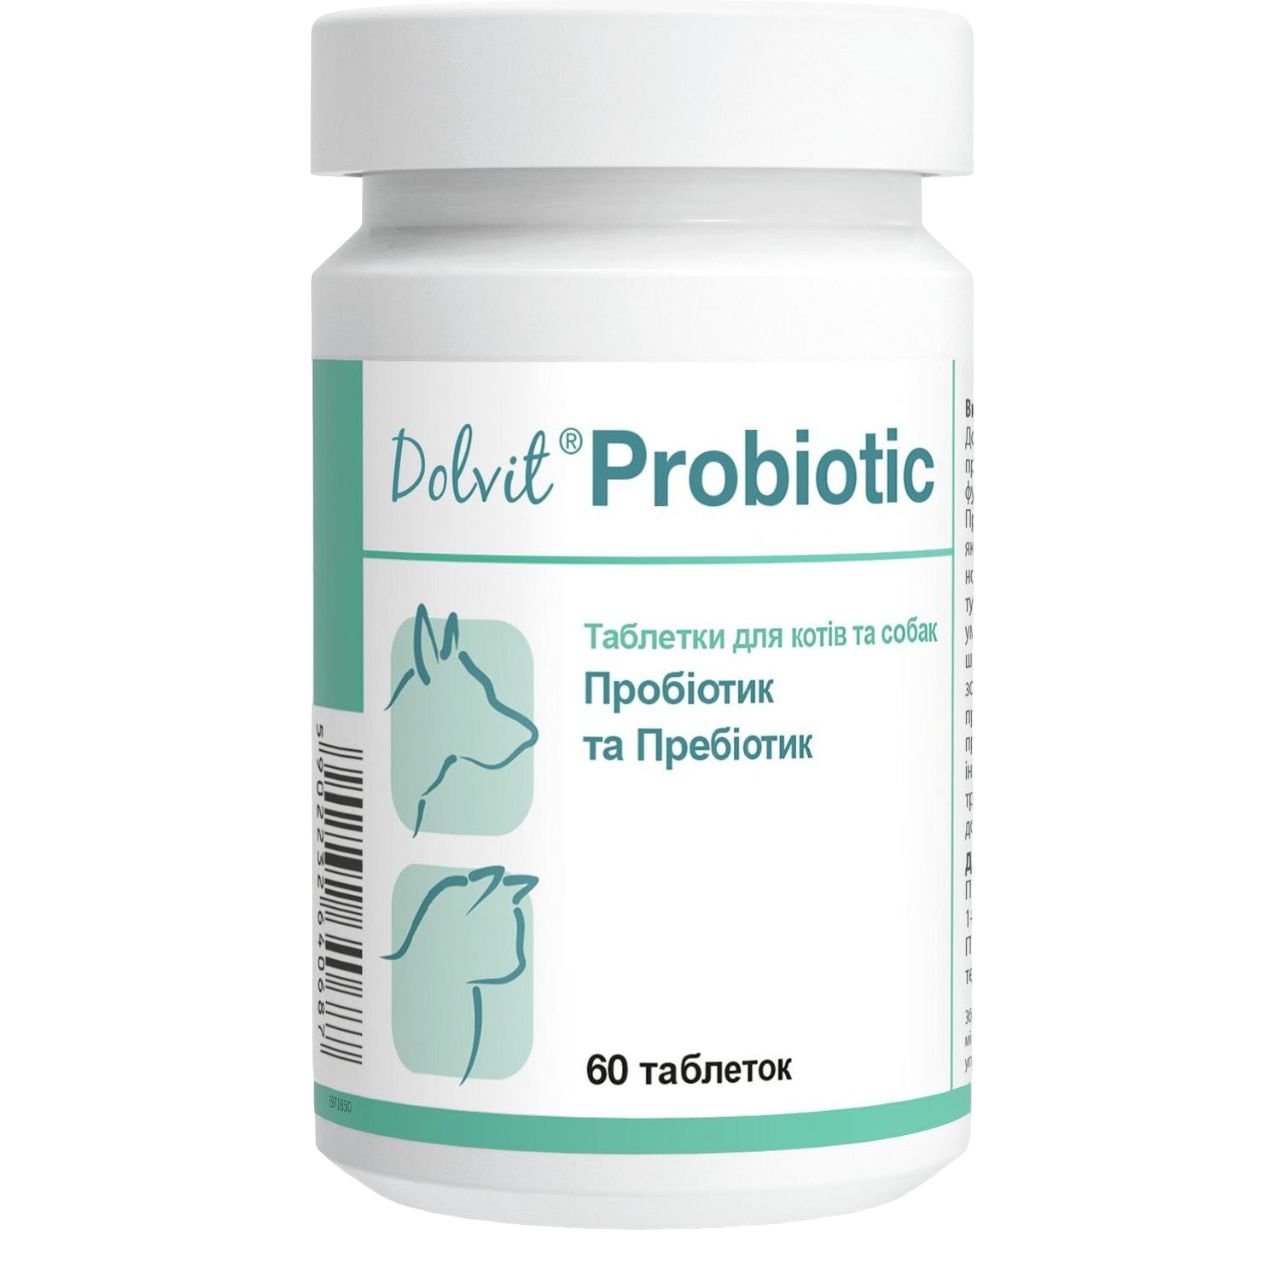 Вітамінно-мінеральна добавка Dolfos Probiotic для правильного функціонування шлунково-кишкового тракту у собак, 60 таблеток (4005-60) - фото 1